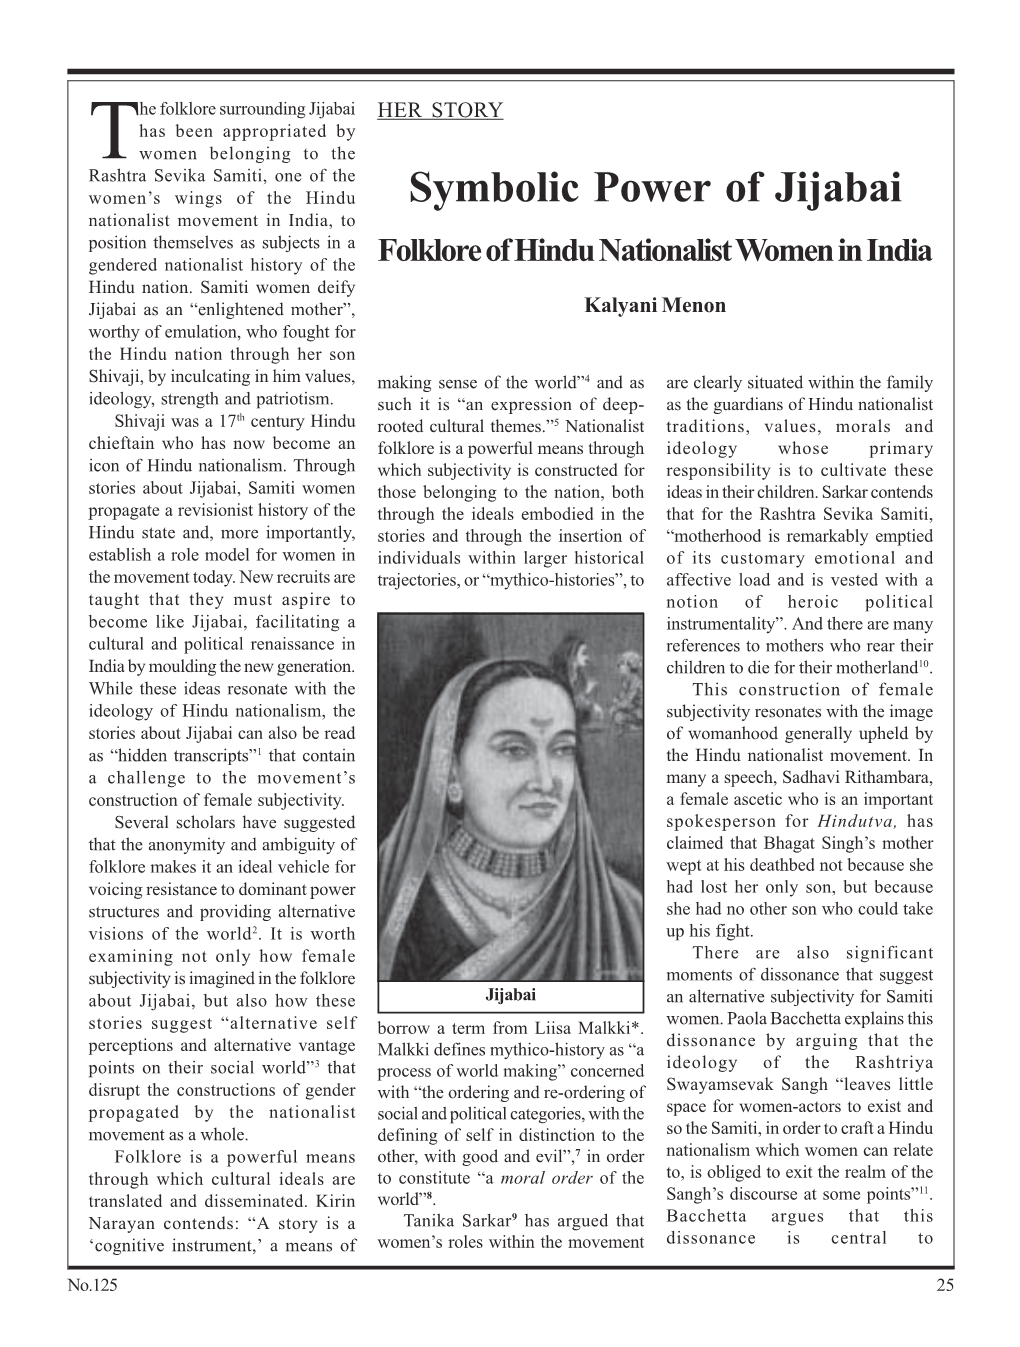 Symbolic Power of Jijabai